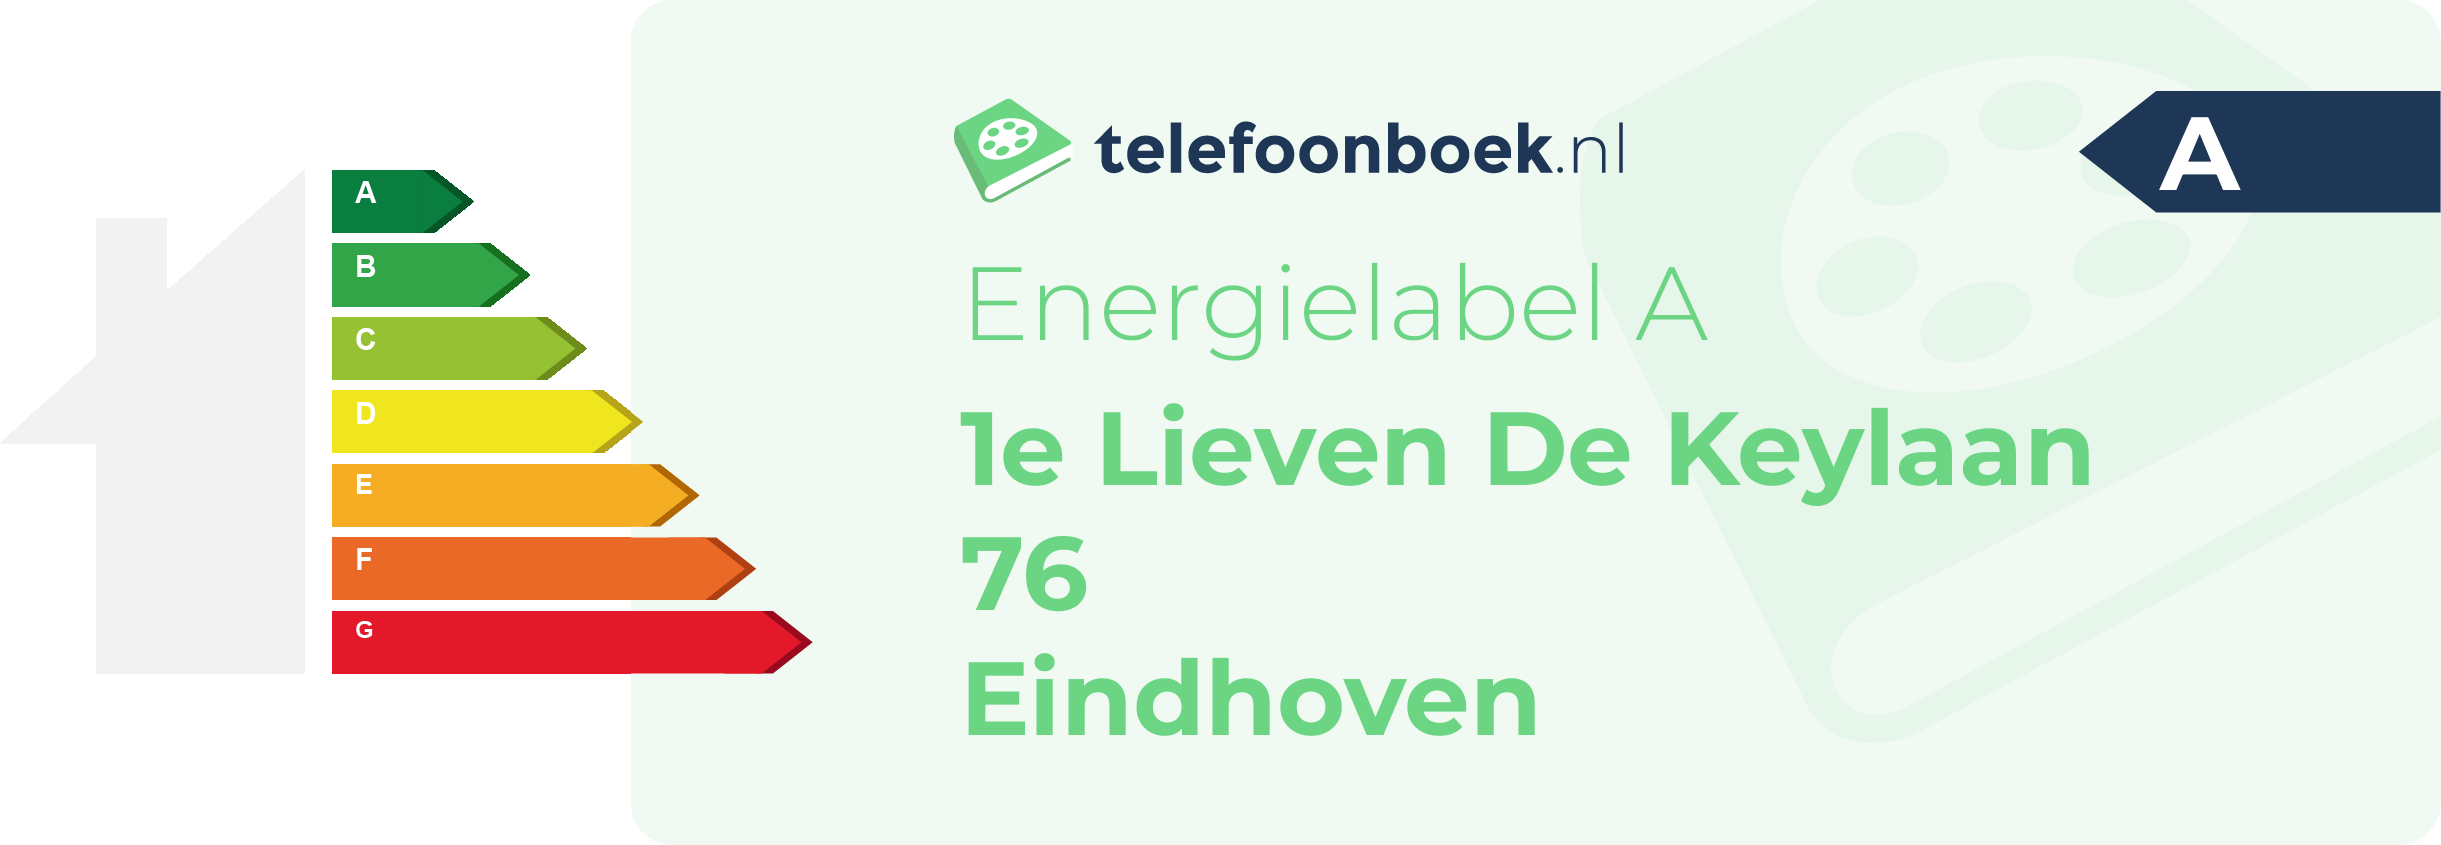 Energielabel 1e Lieven De Keylaan 76 Eindhoven